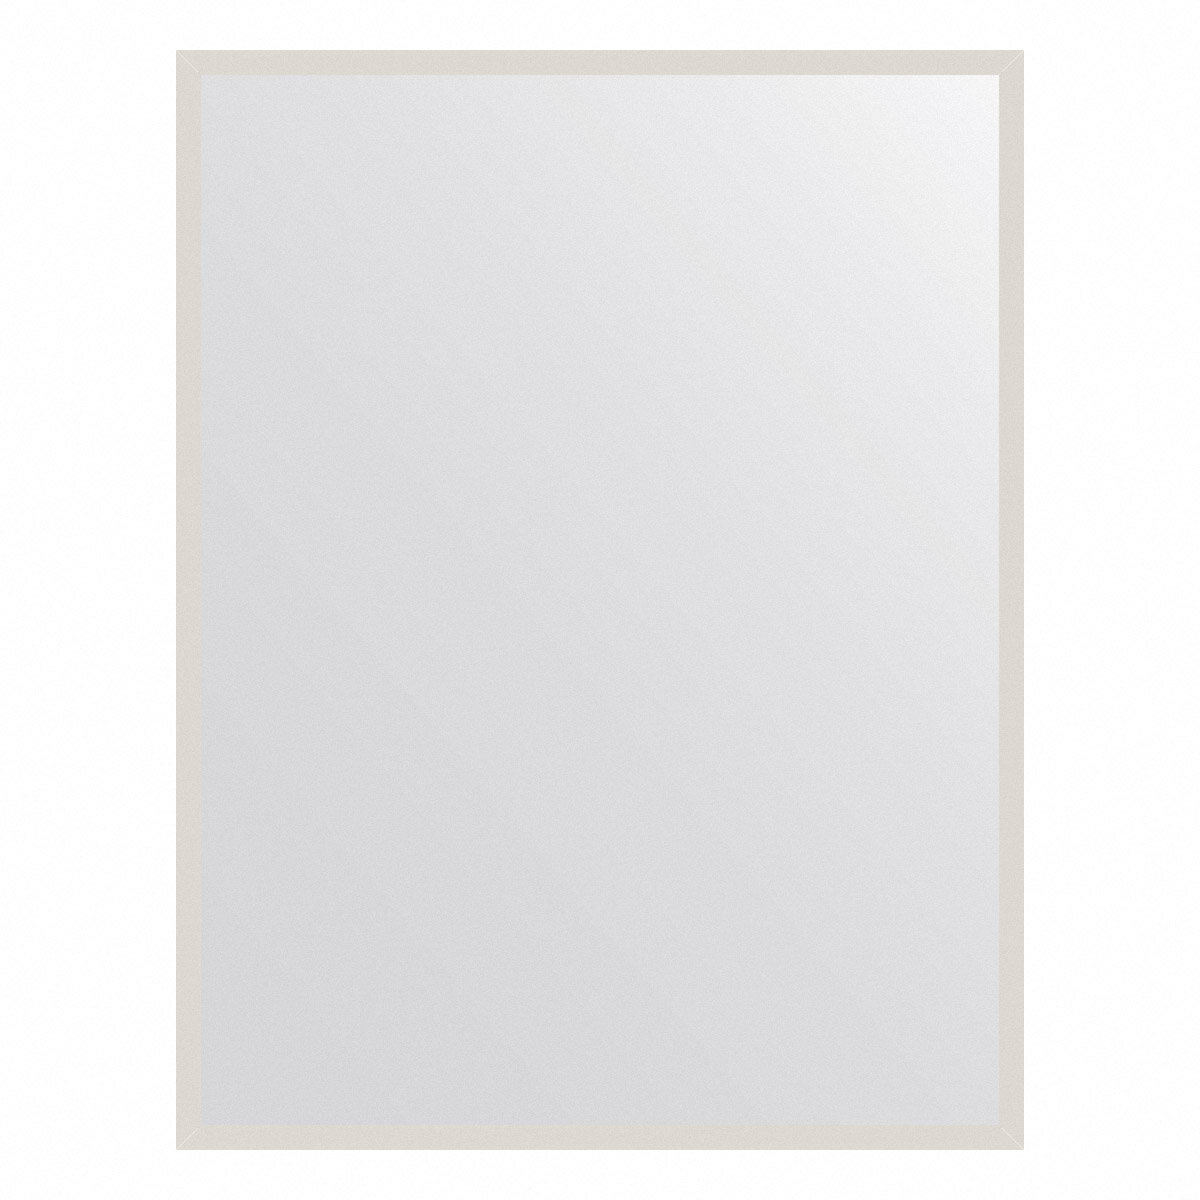 Evoform Зеркало настенное EVOFORM в багетной раме белый, 66х86 см, BY 7477